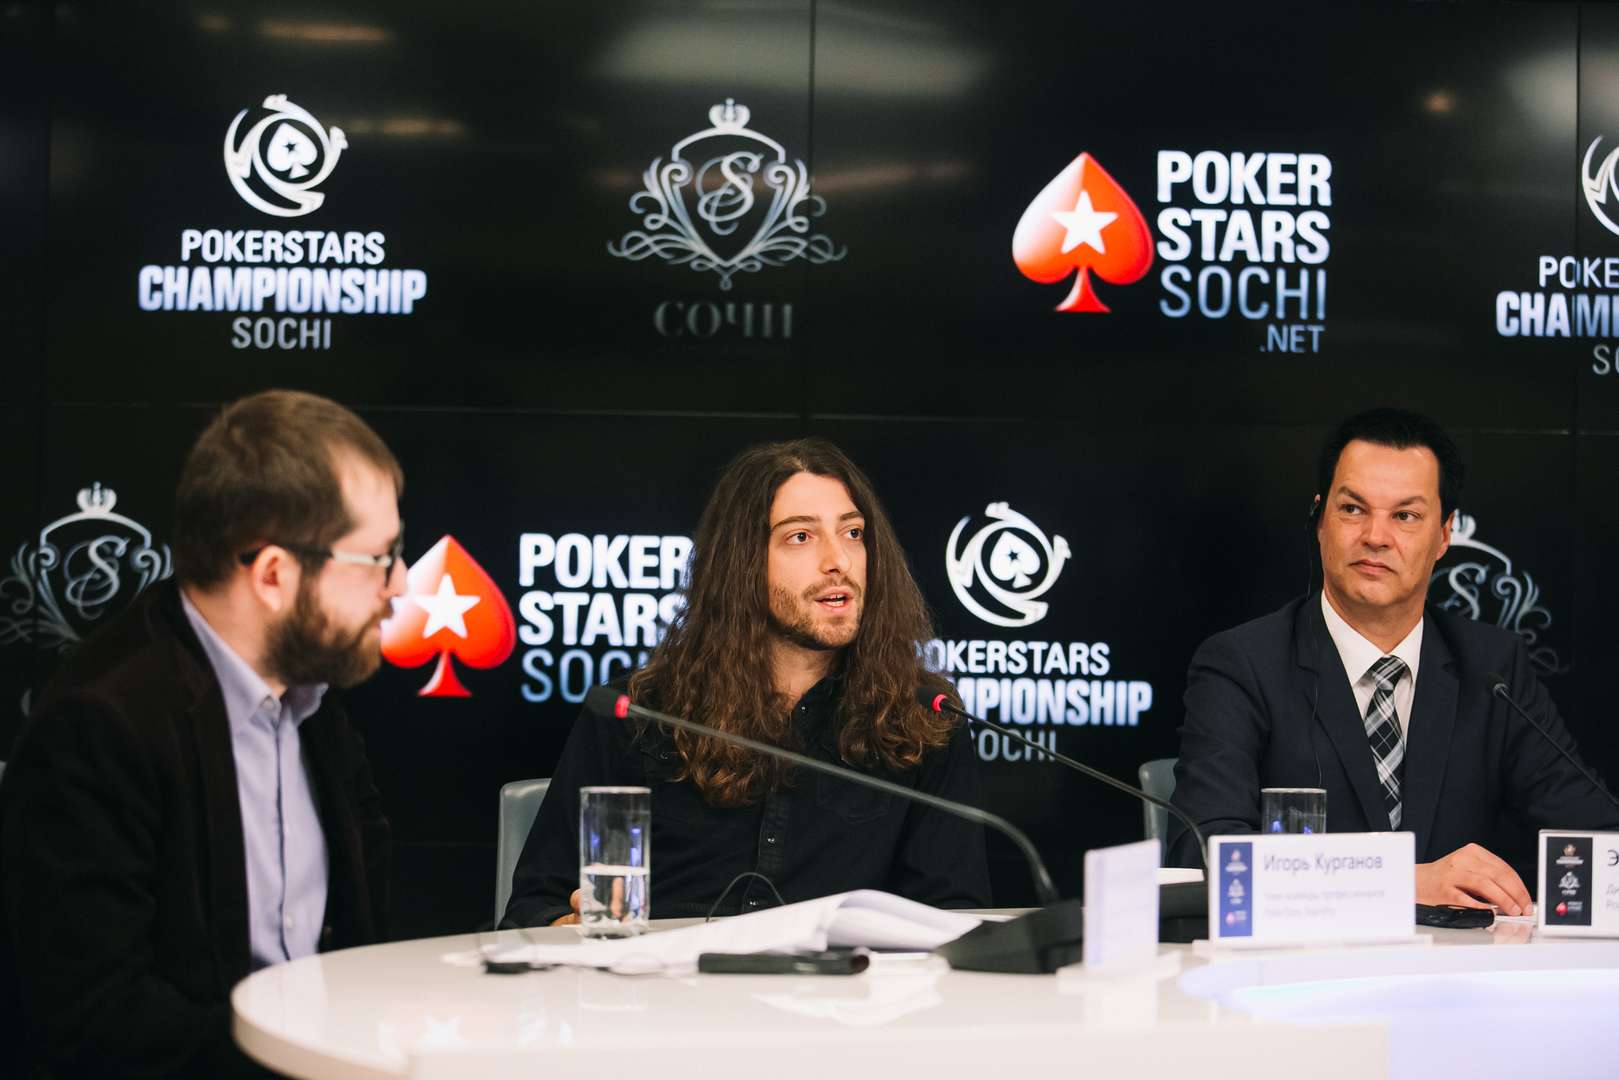 PokerStars дает шанс попасть на фестиваль покера в Сочи всего за 2,50 доллара